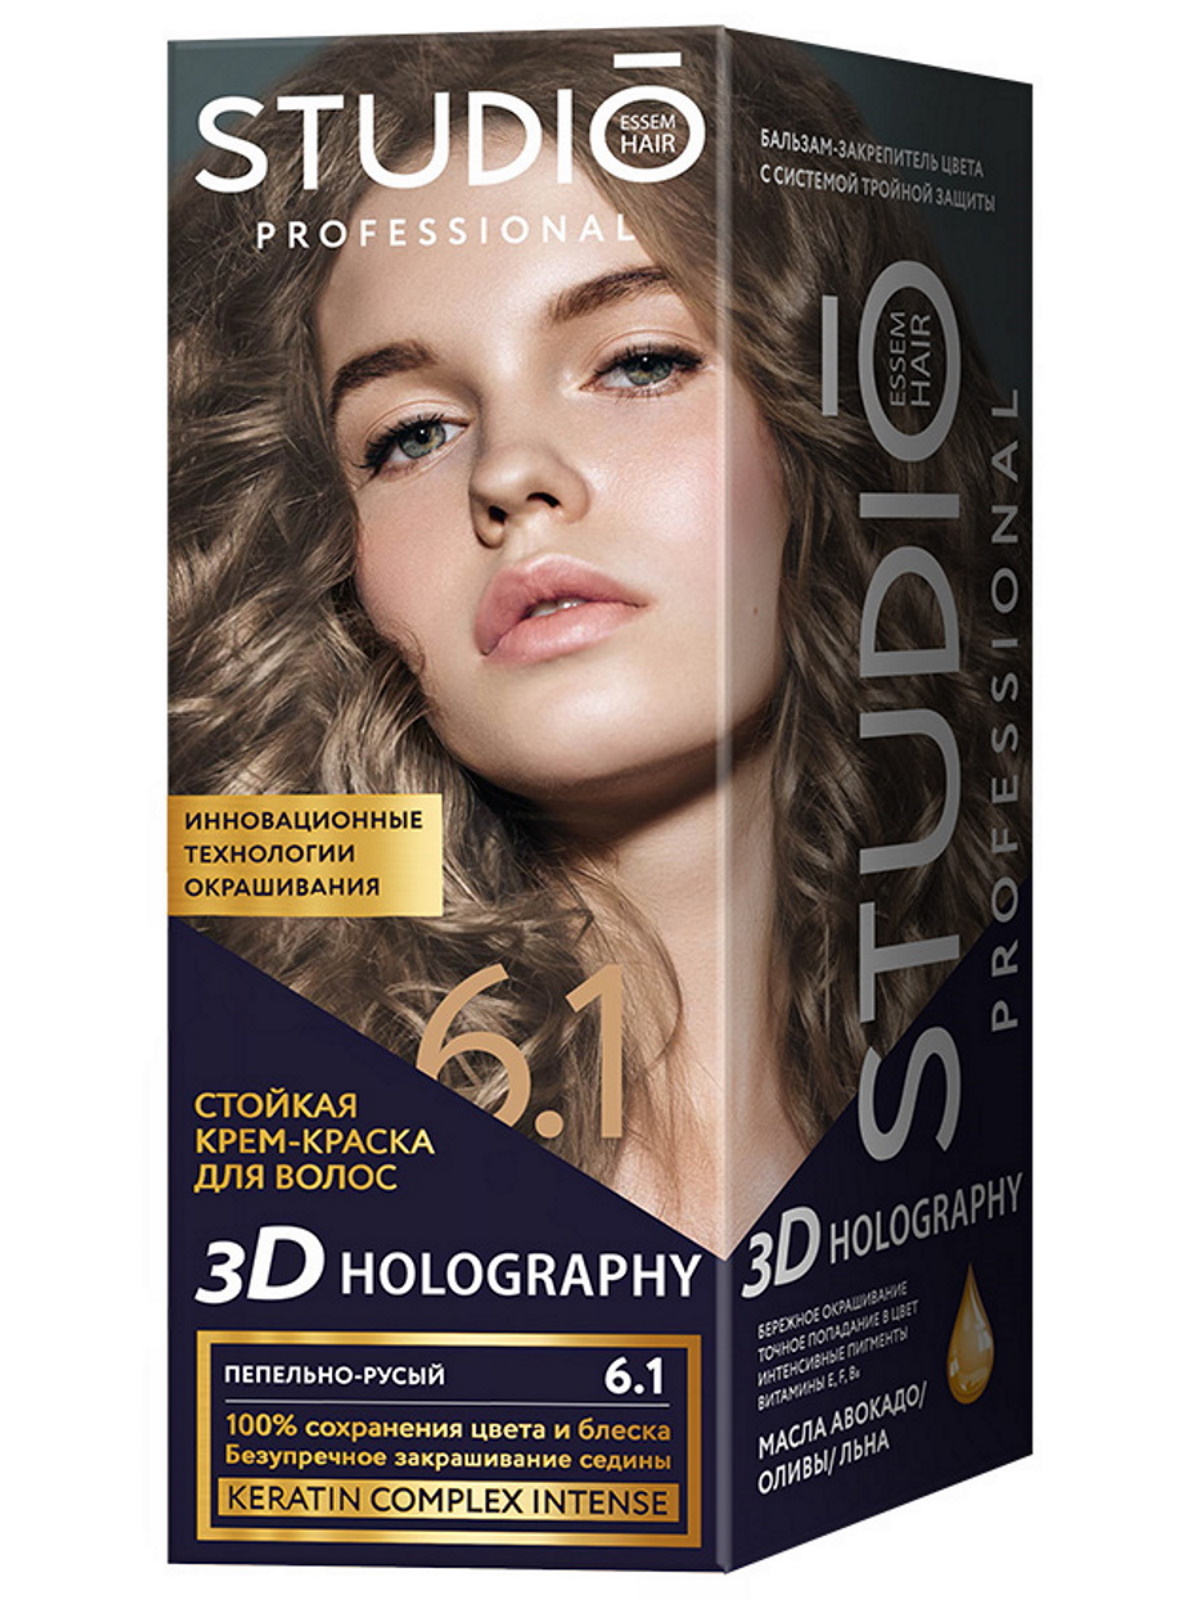 Комплект 3D HOLOGRAPHY STUDIO PROFESSIONAL 6.1 пепельно-русый 2*50+15 мл комплект 3d holography studio professional 3 56 темная вишня 2 50 15 мл